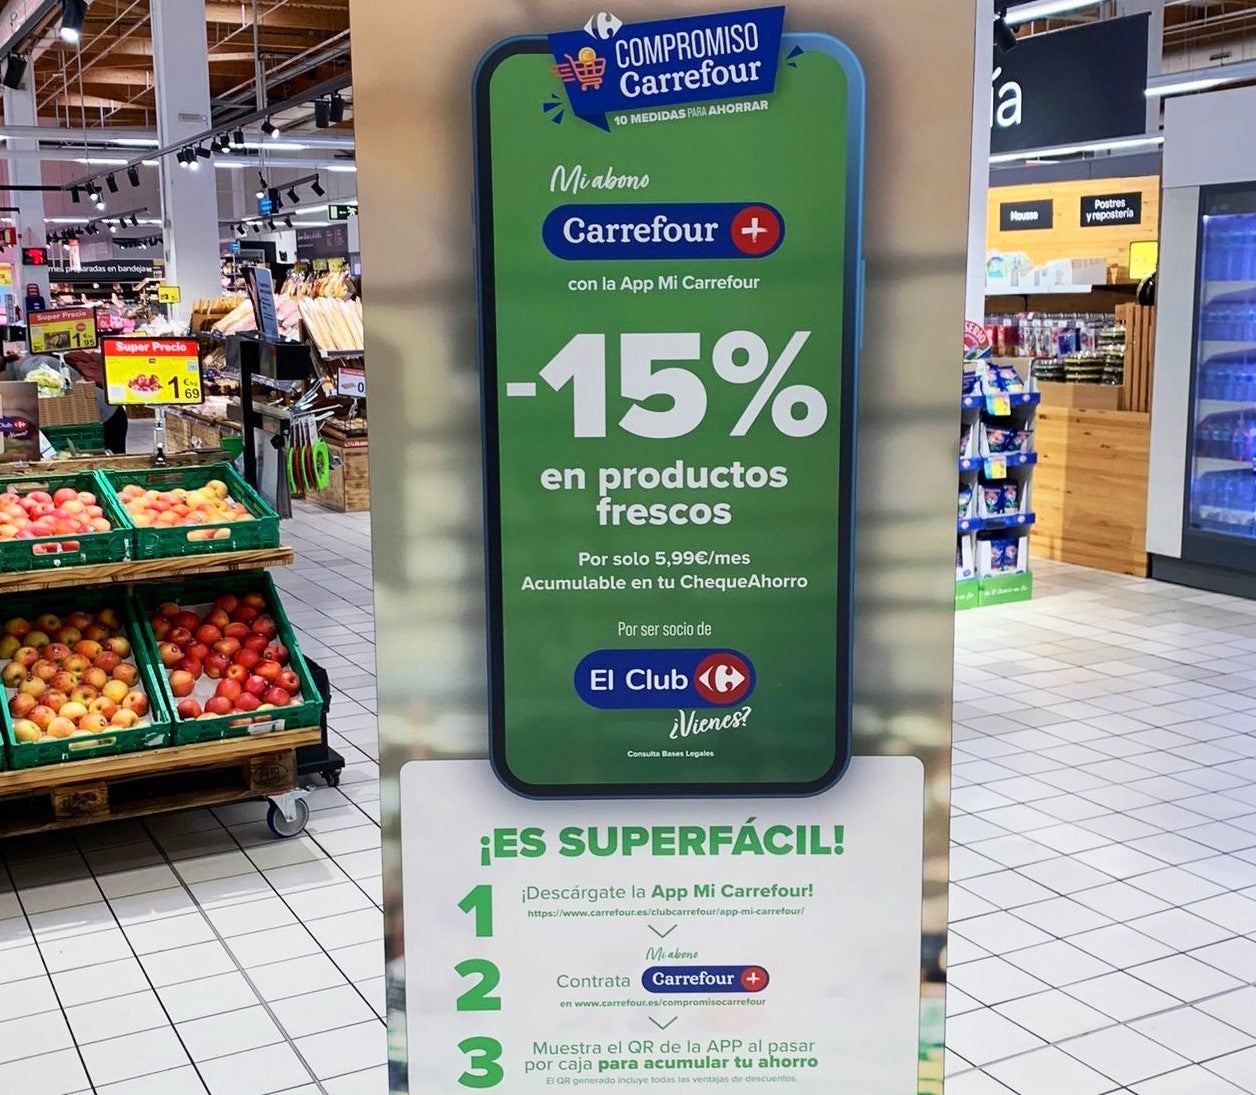 Ofensiva promocional de Carrefour: descuentos de hasta el 50% y marca blanca barata que nadie